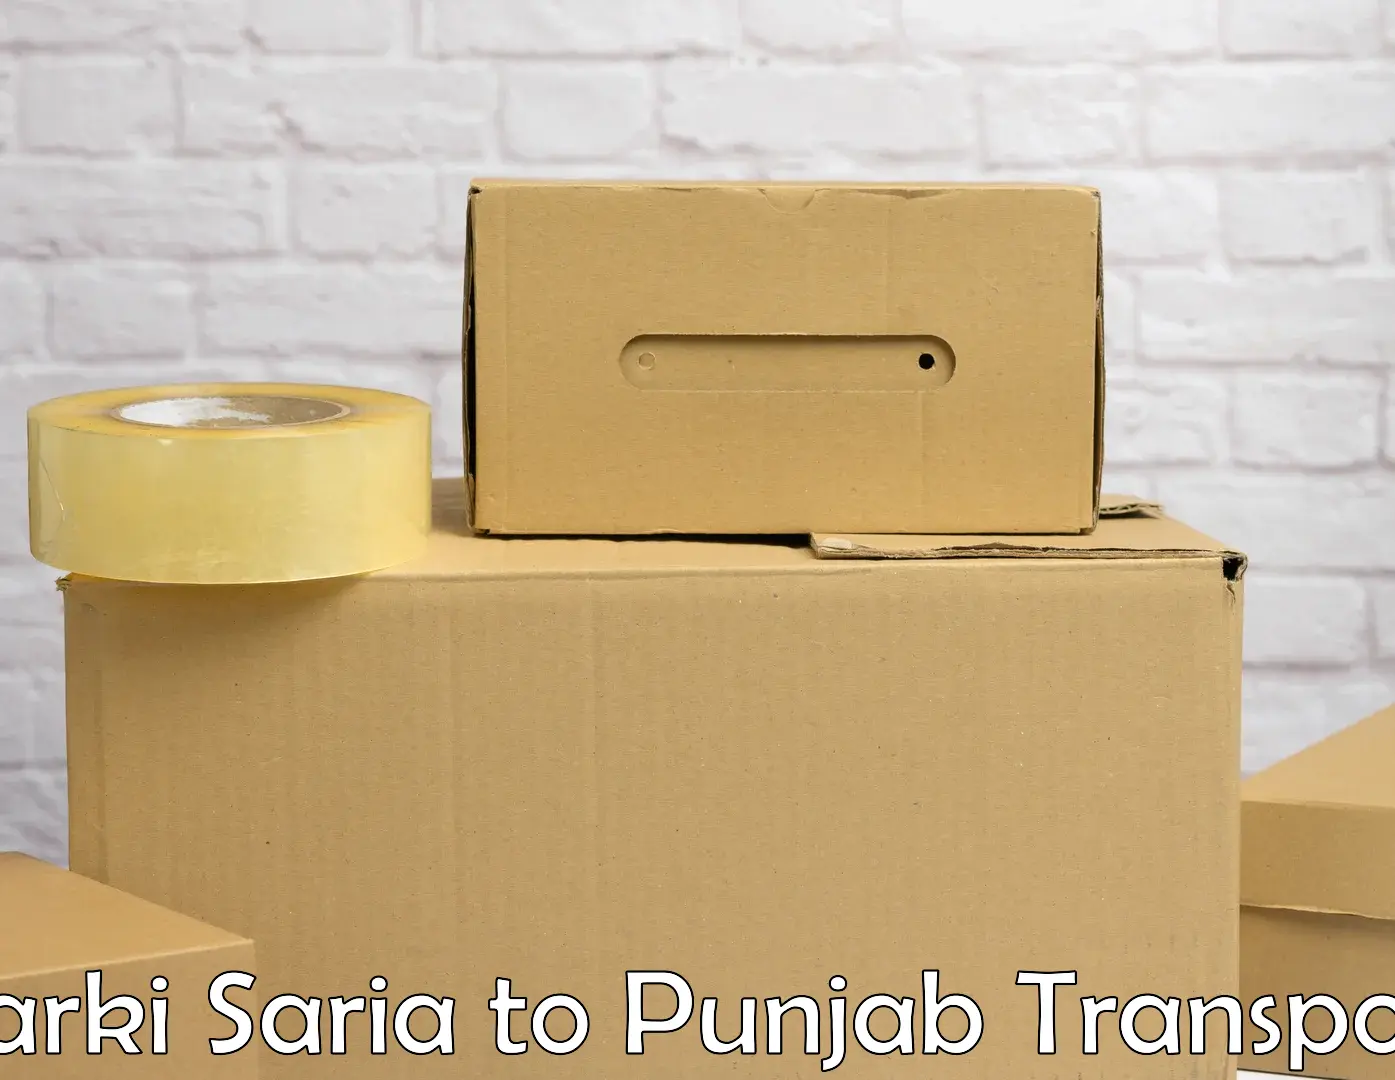 Daily transport service Barki Saria to Sangrur